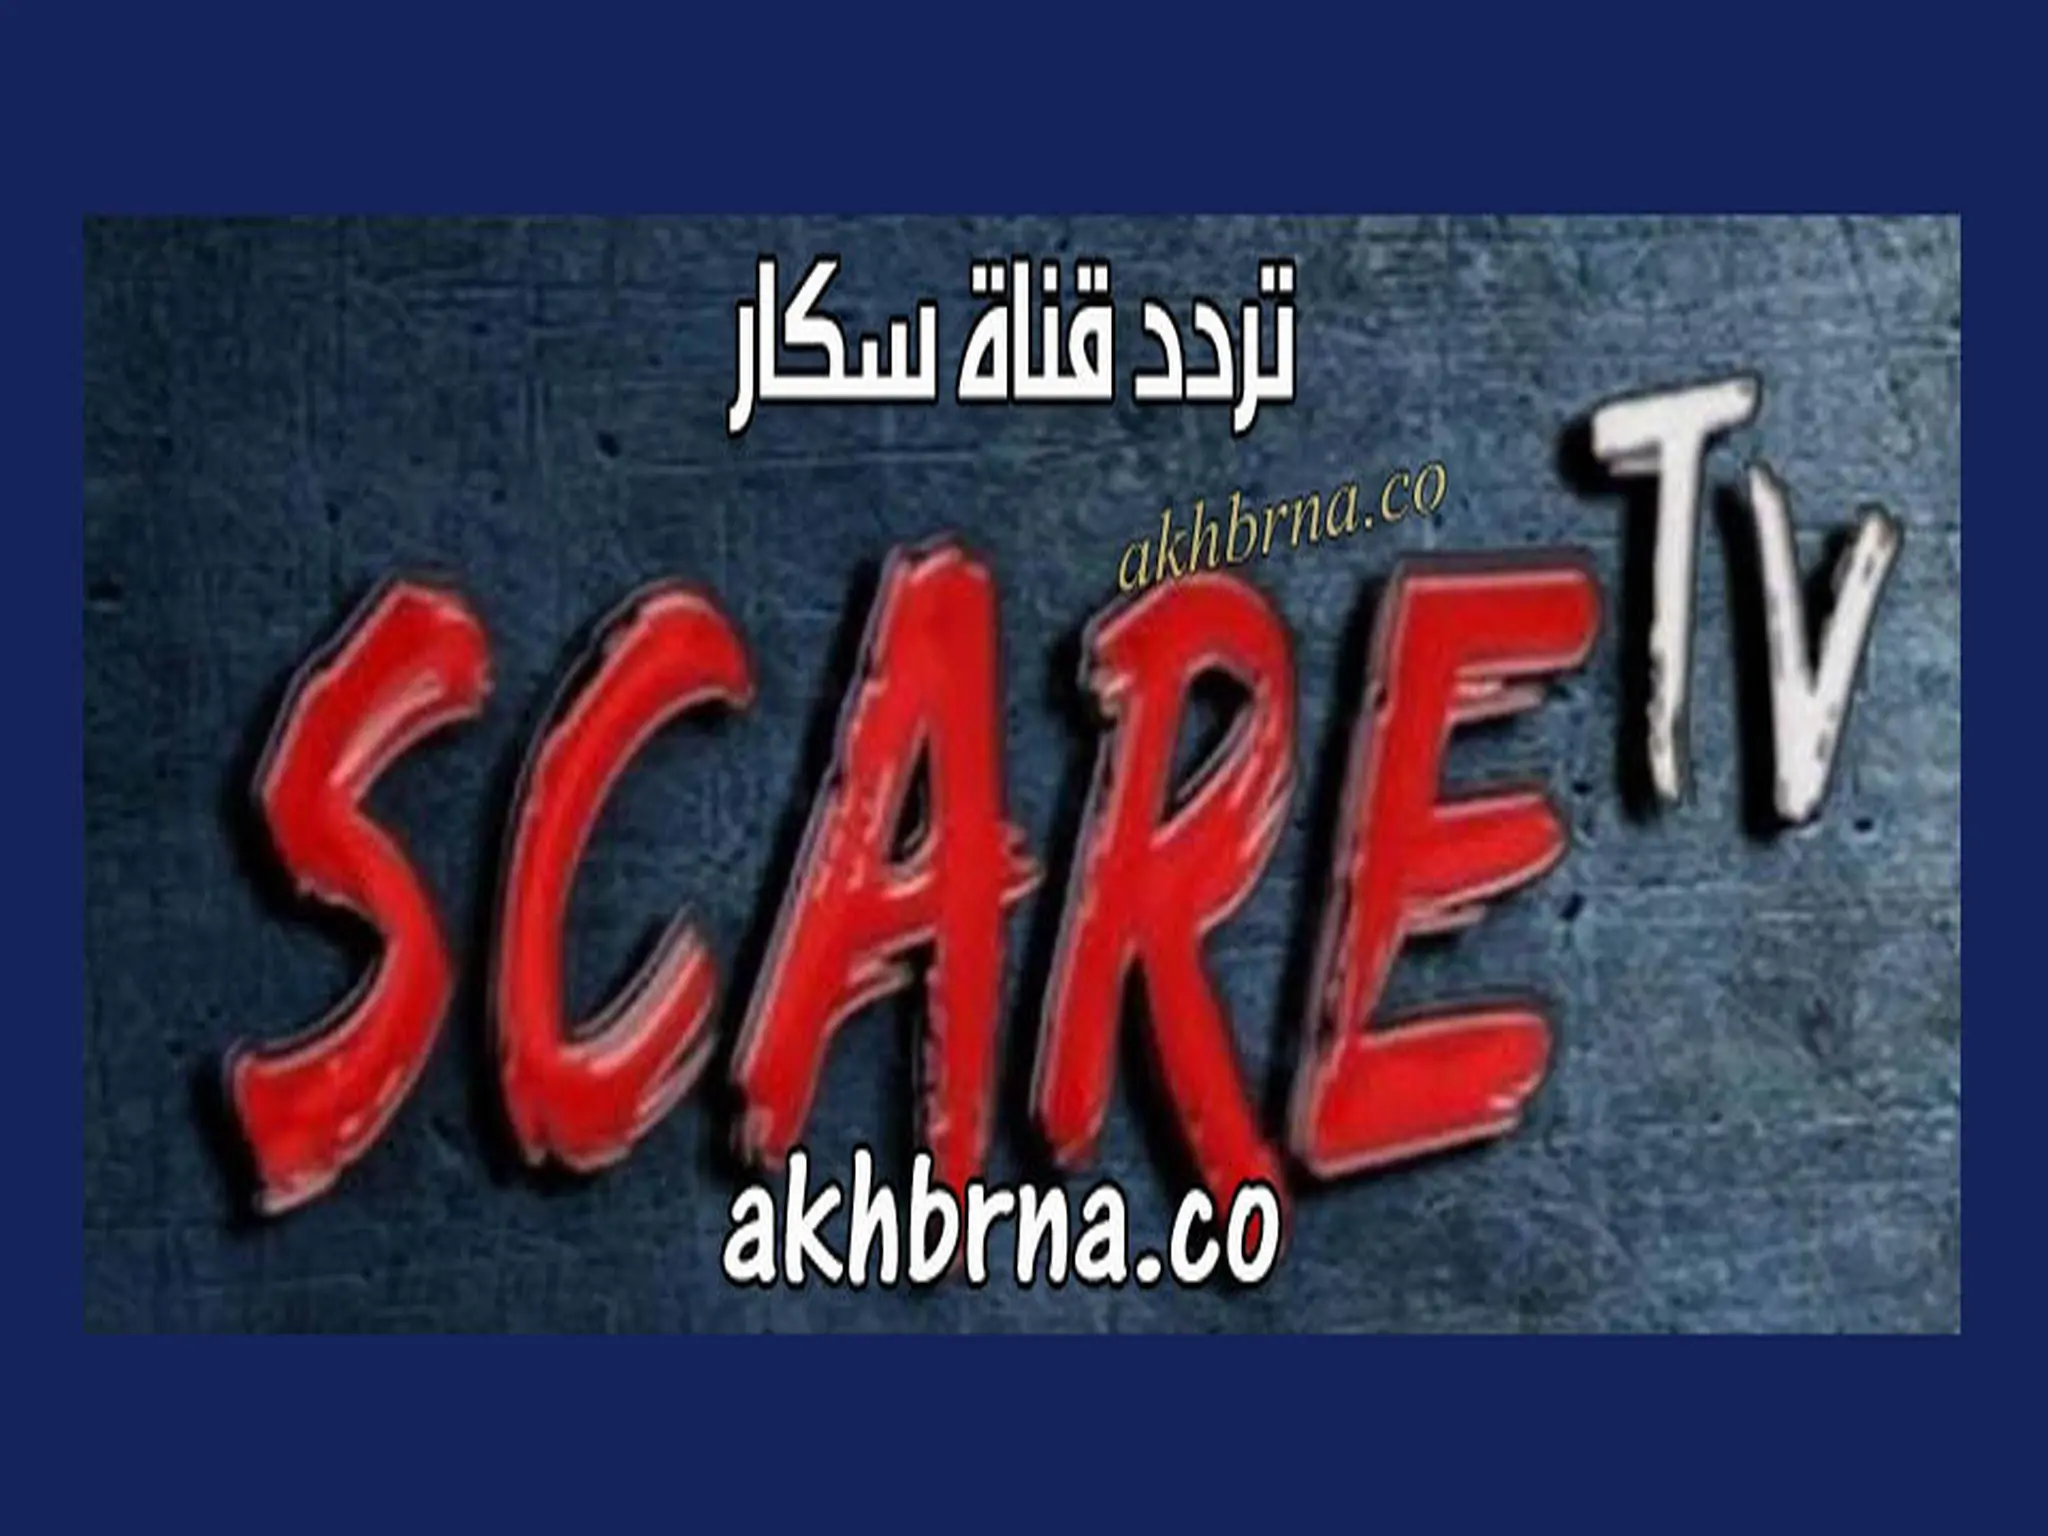 الآن .. تردد قناة سكار scare tv الجديد 2022 افلام الرعب على النايل سات